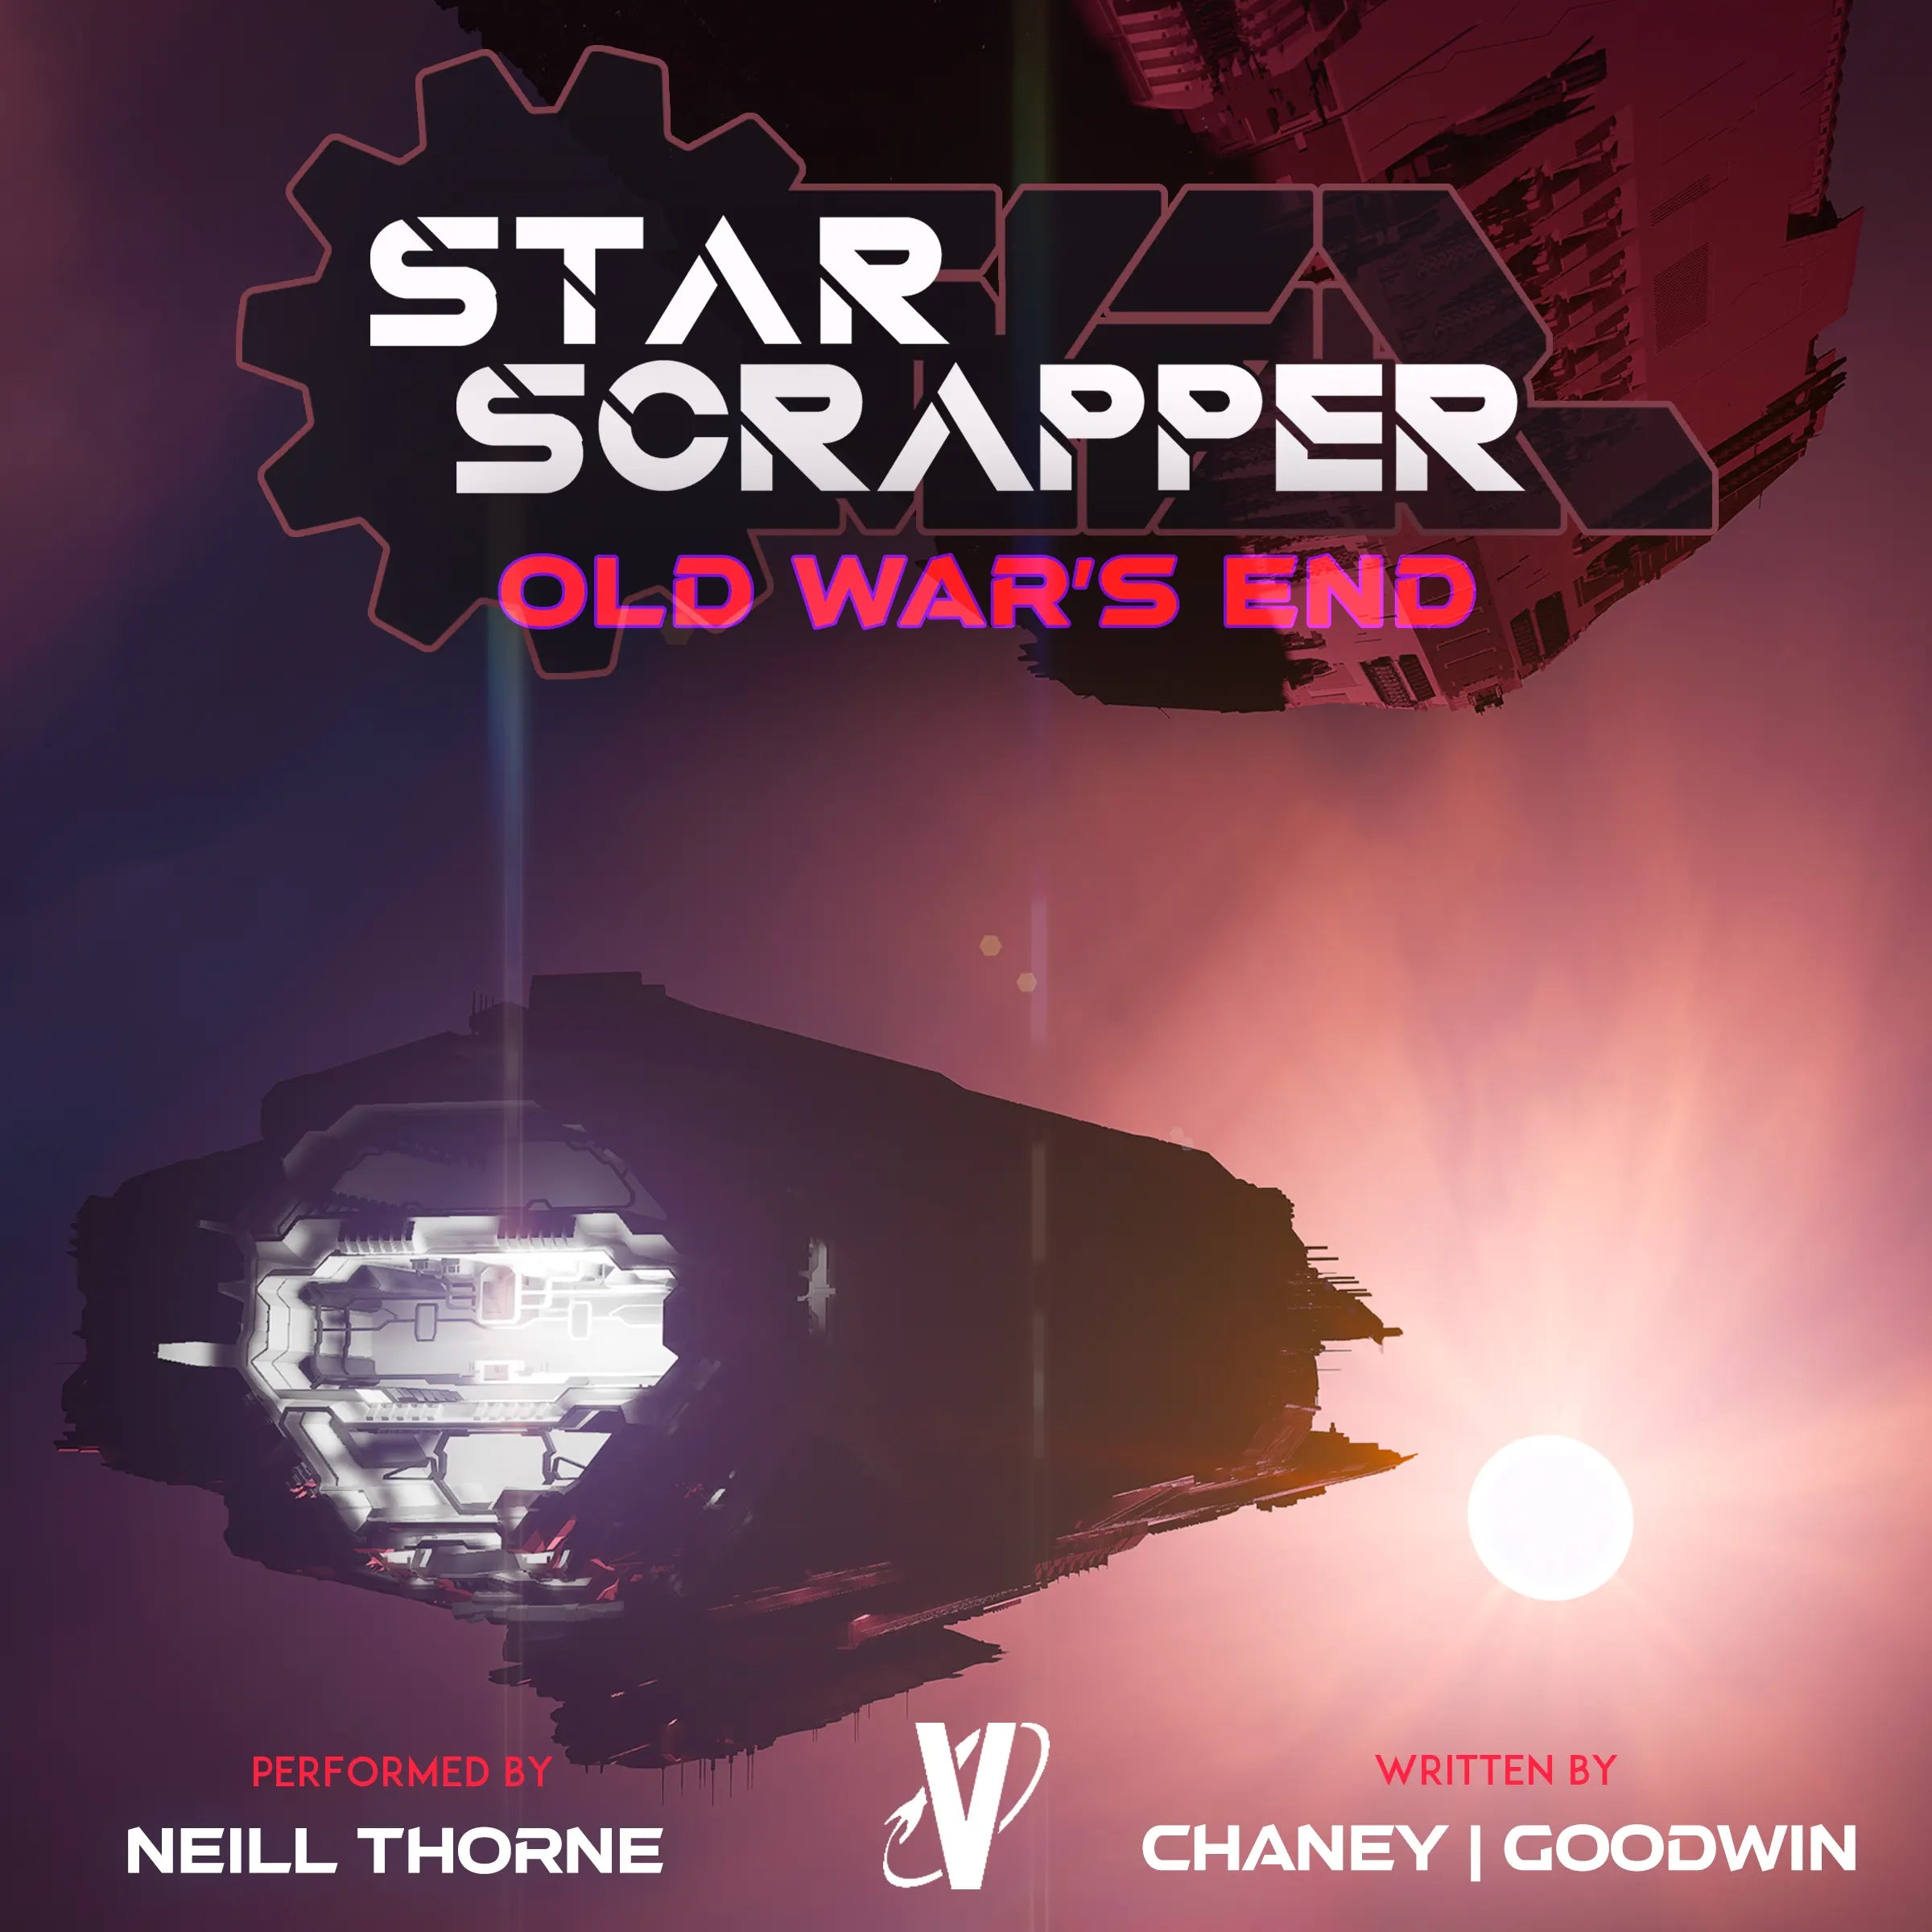 Star Scrapper 0 Audiobook: Old War's End